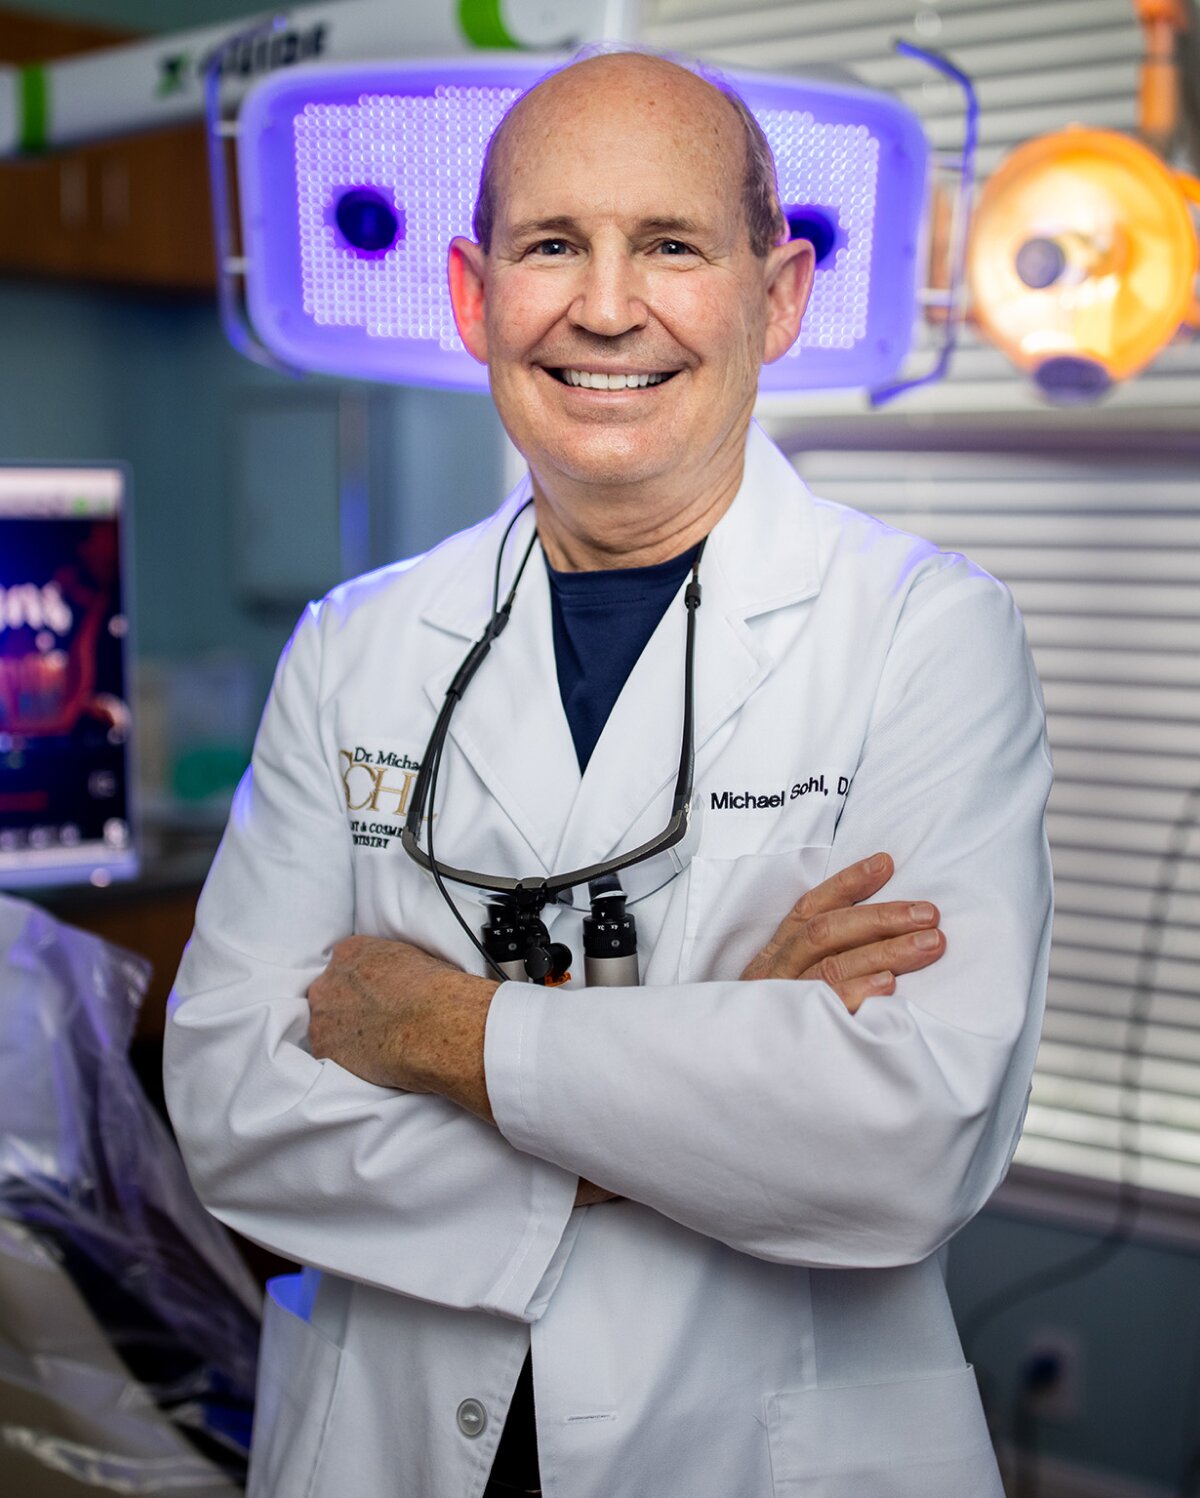 Stuart Dental Implant Dentist dr sohl